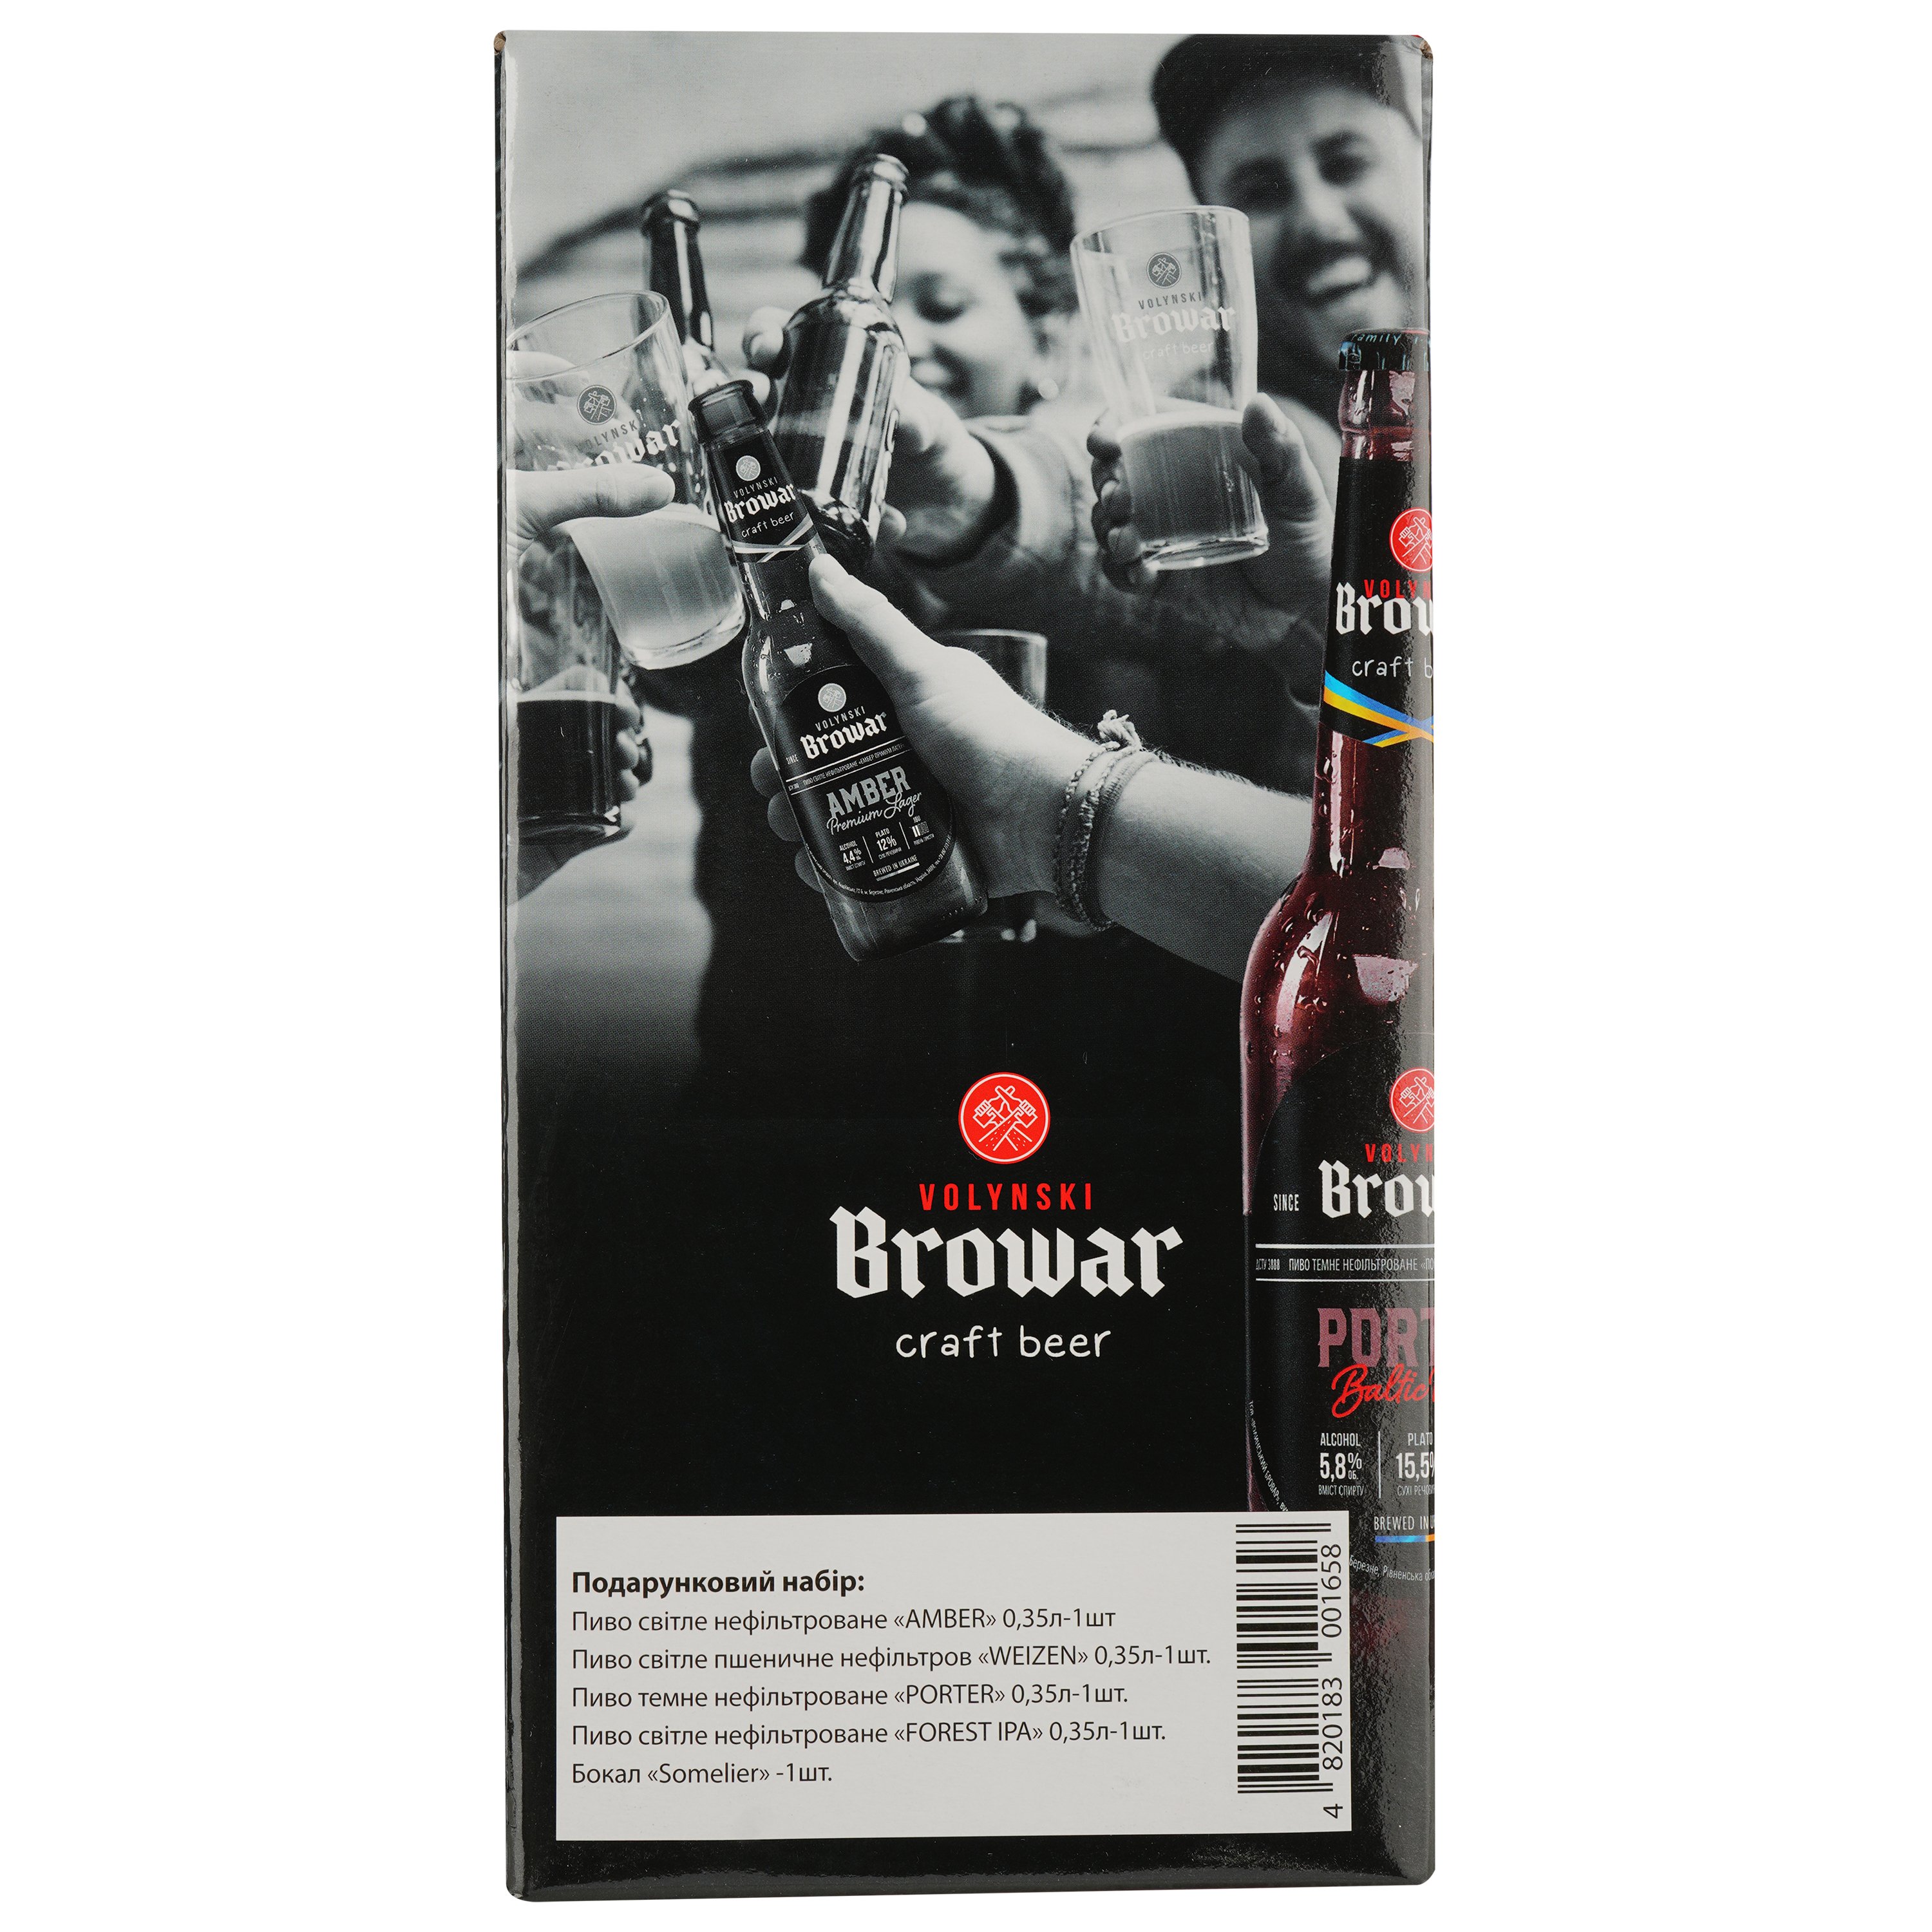 Подарунковий набір пива Volynski Browar, 3,8-5,8%, 1,4 л (4 шт. по 0,35 л) + Келих Somelier, 0,4 л - фото 8